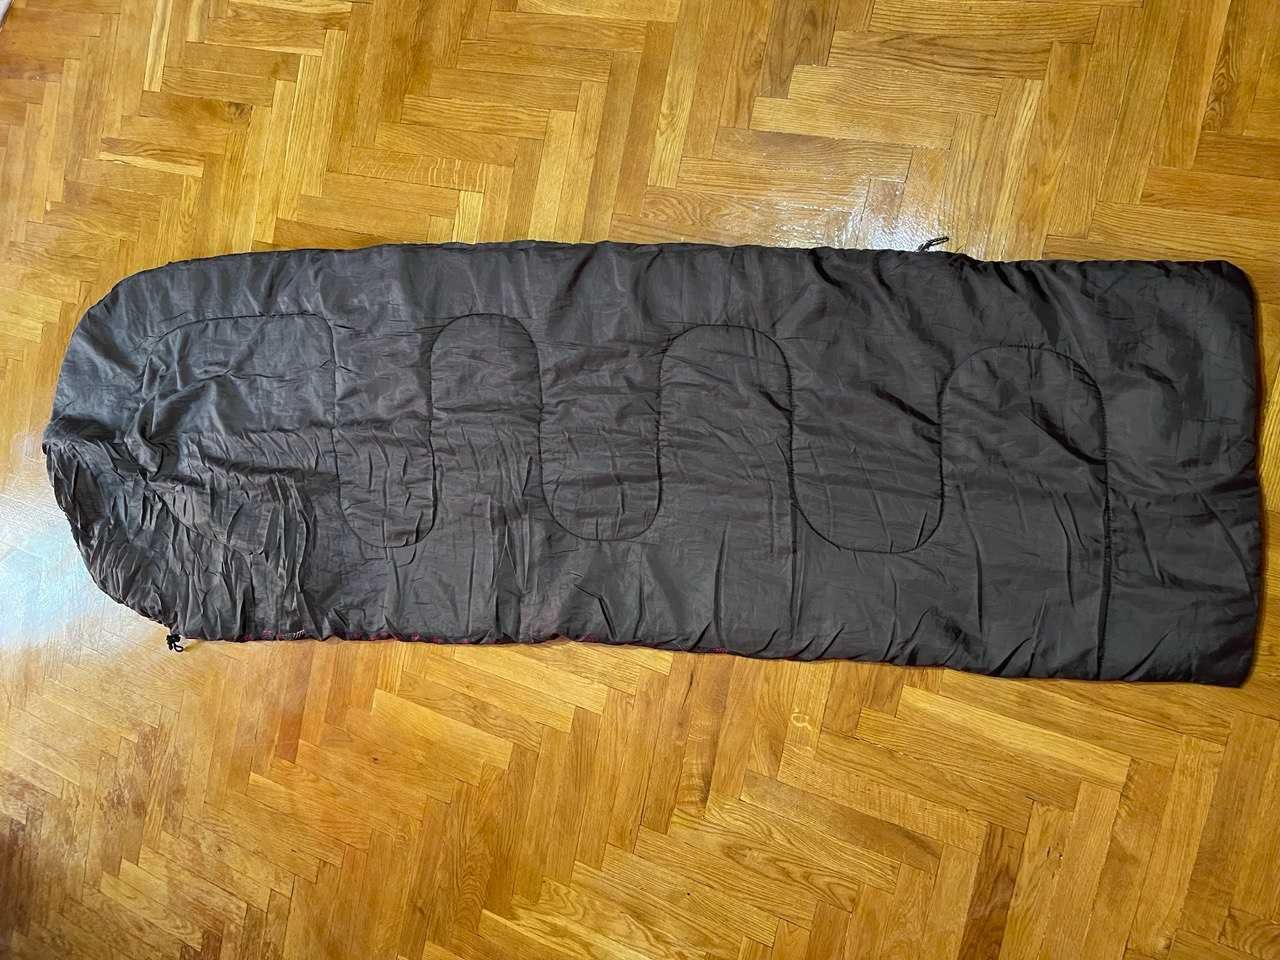 Спальный мешок Quechua s10 размер L спальник